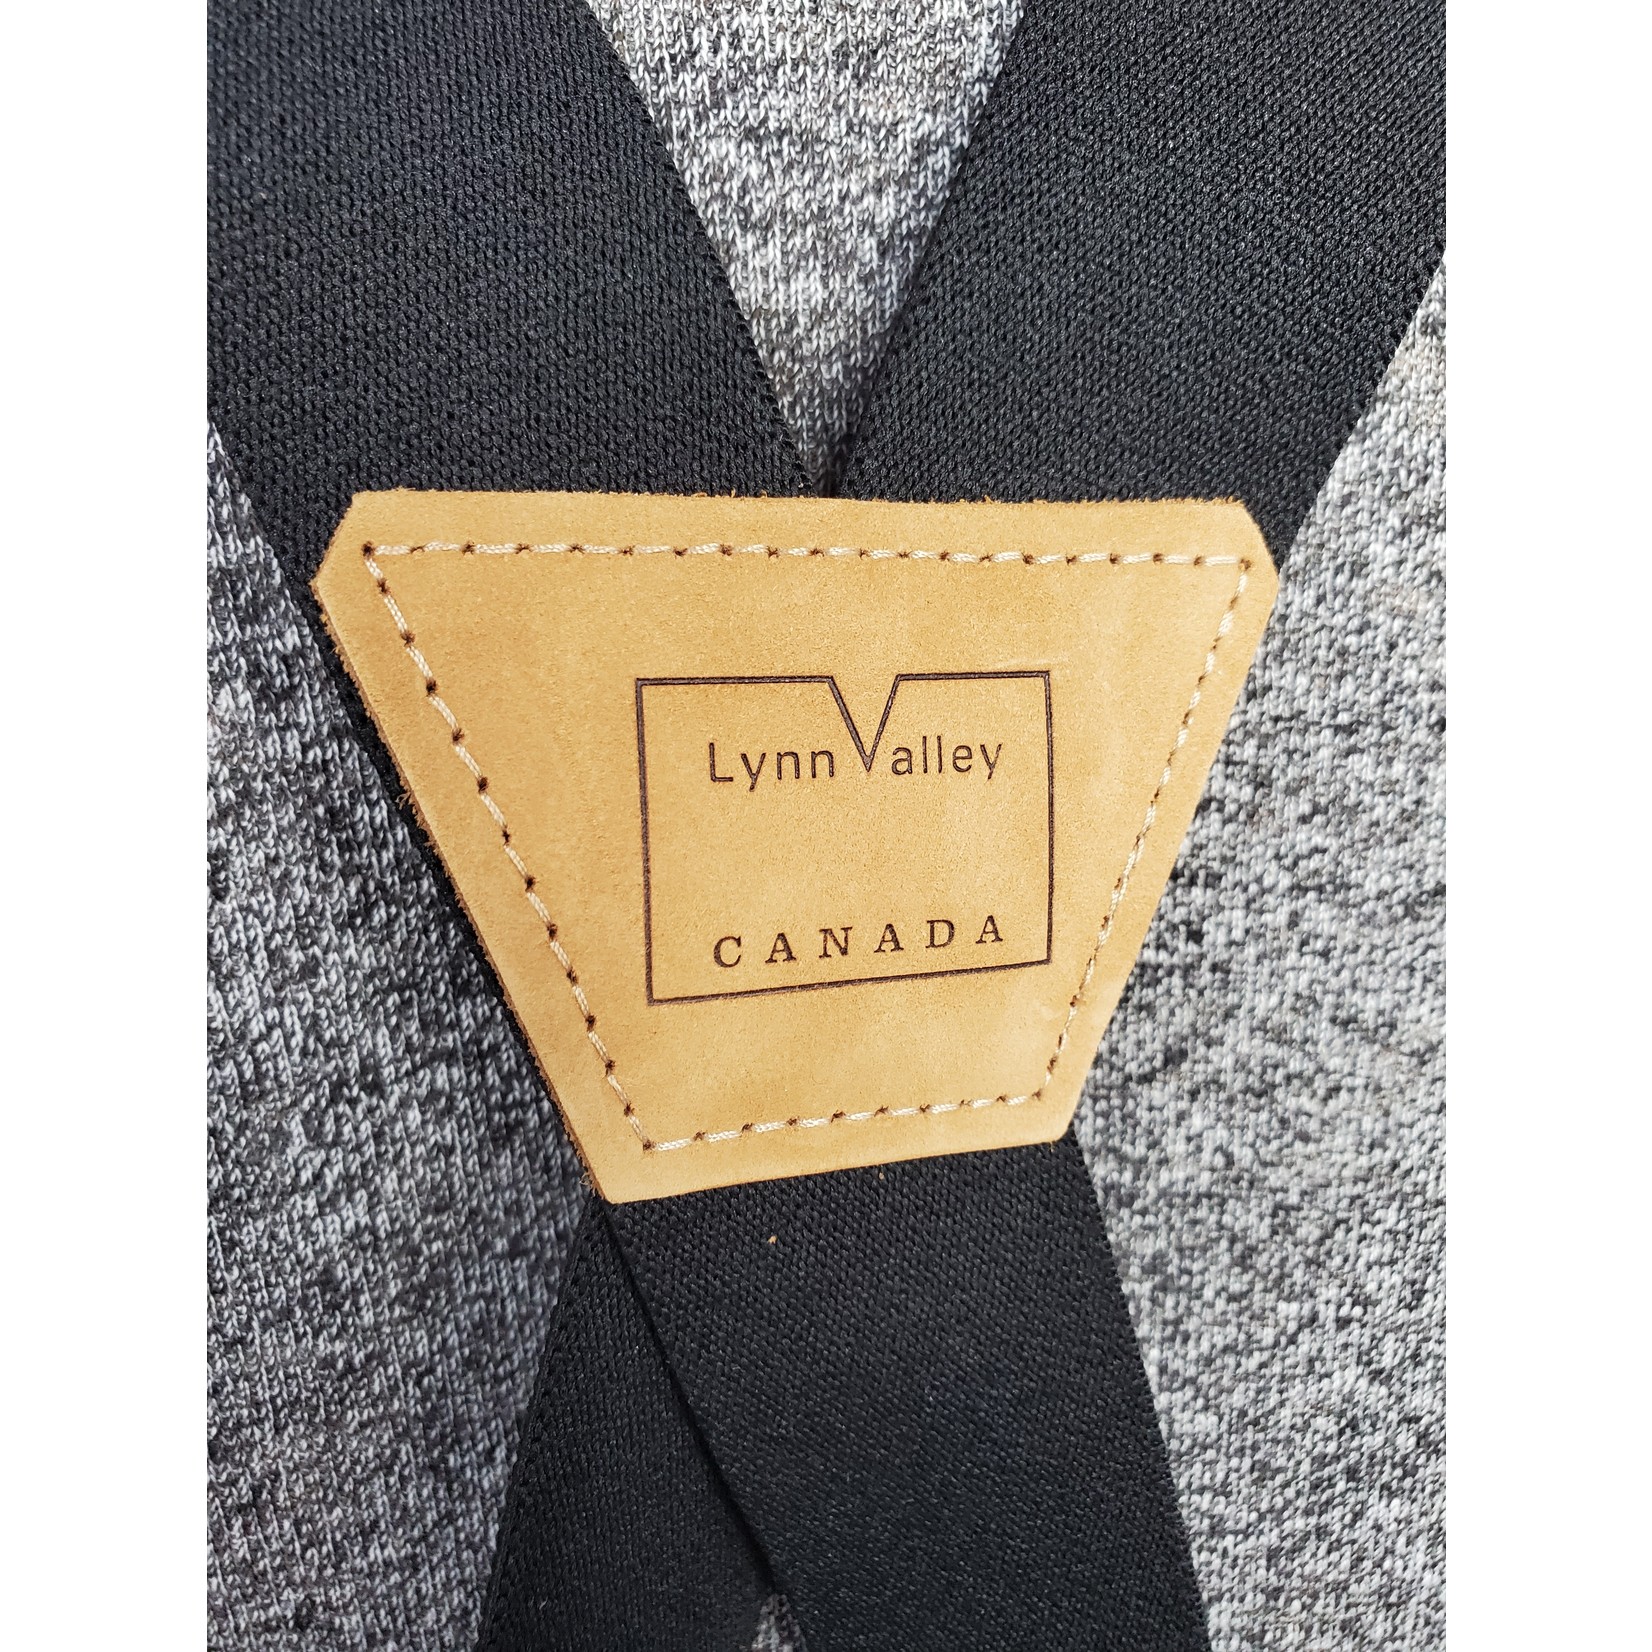 Lynn Valley Mfg Lynn Valley 1.5" Button-On Suspender SB150-5 Black